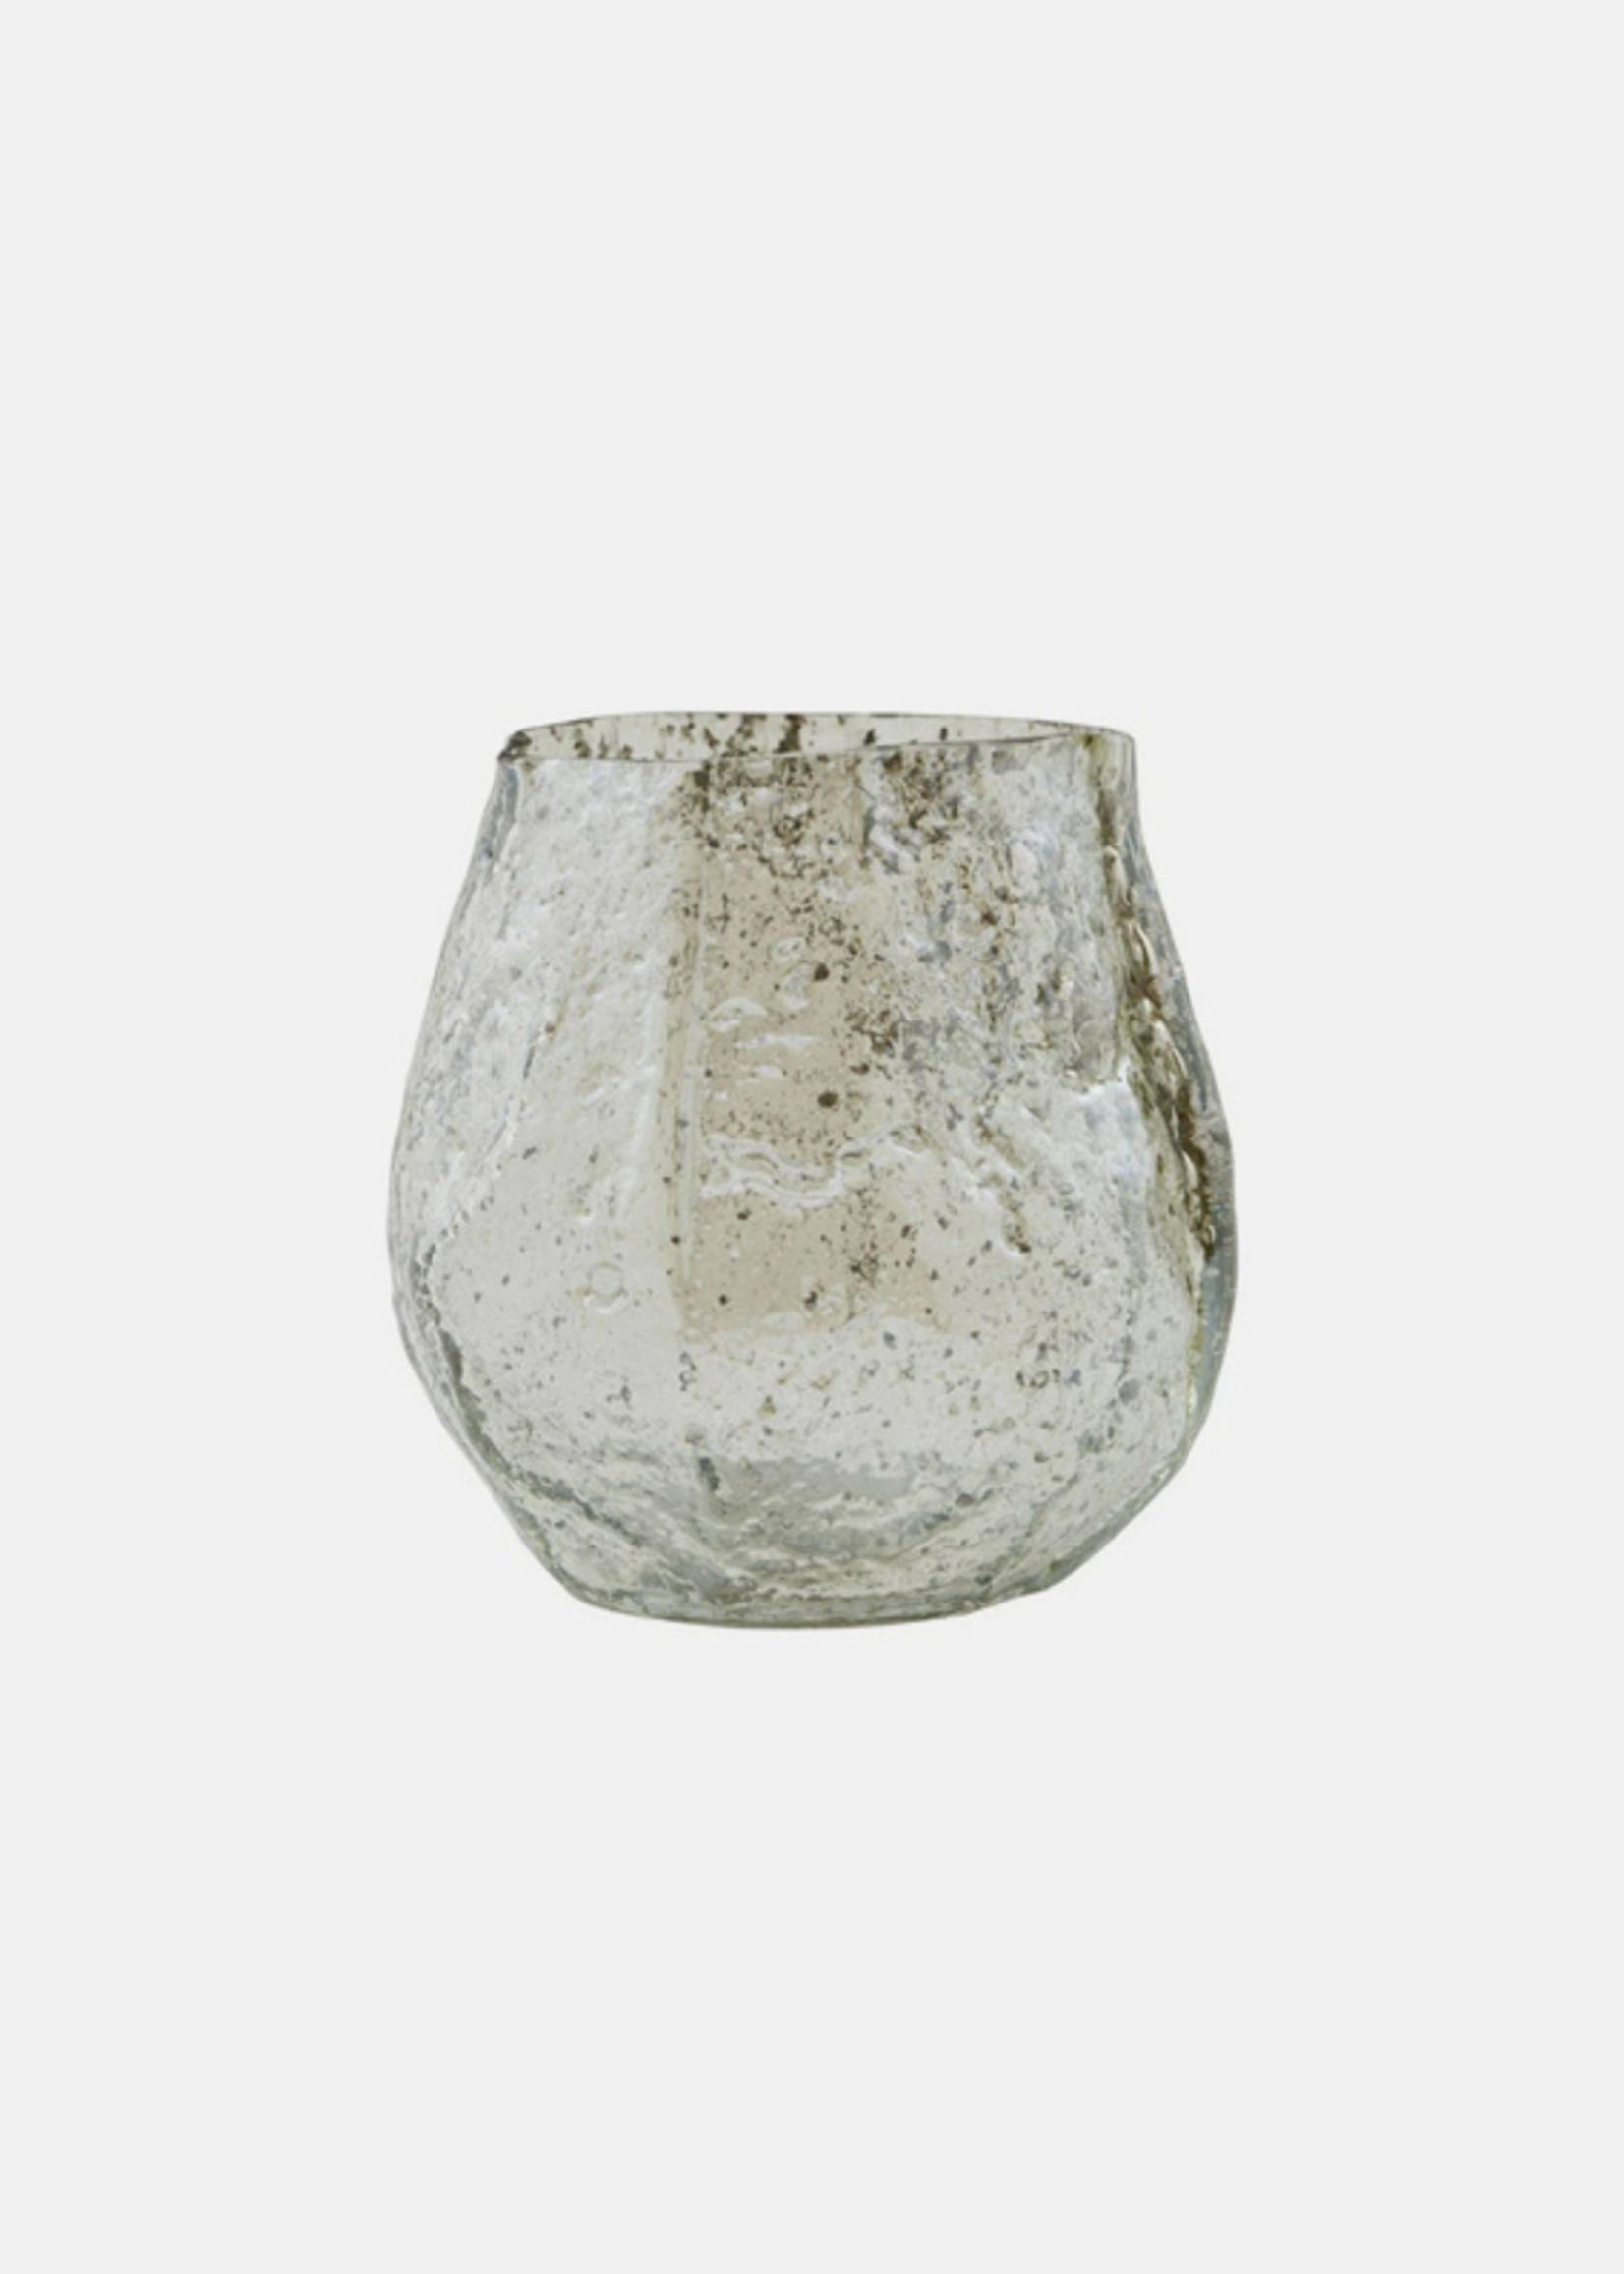 Brand A Ceramic Cup